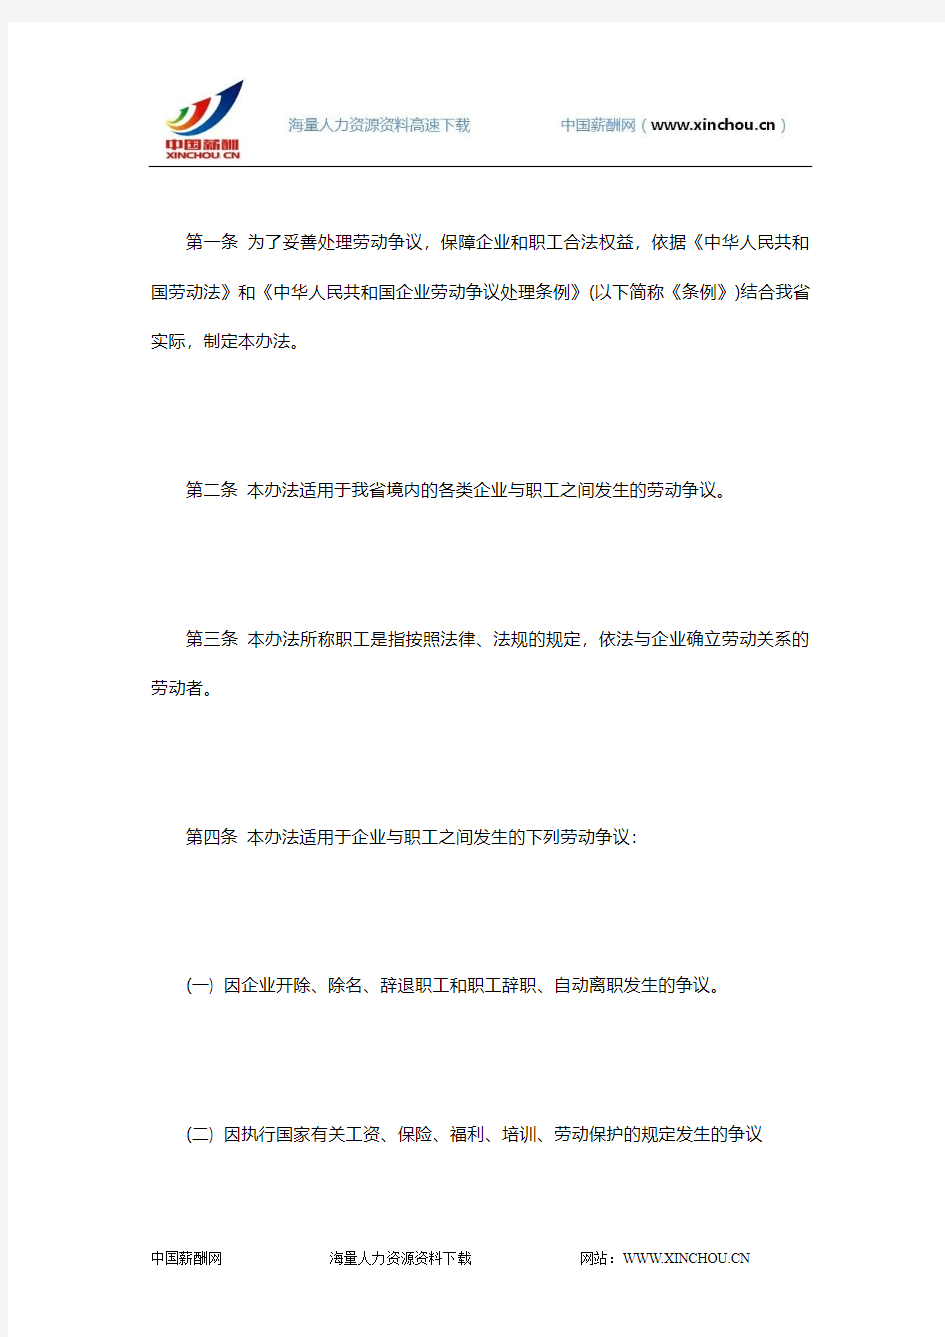 广州市-颁布《广东省企业劳动争议处理实施办法》的通知-粤府[1995]19号